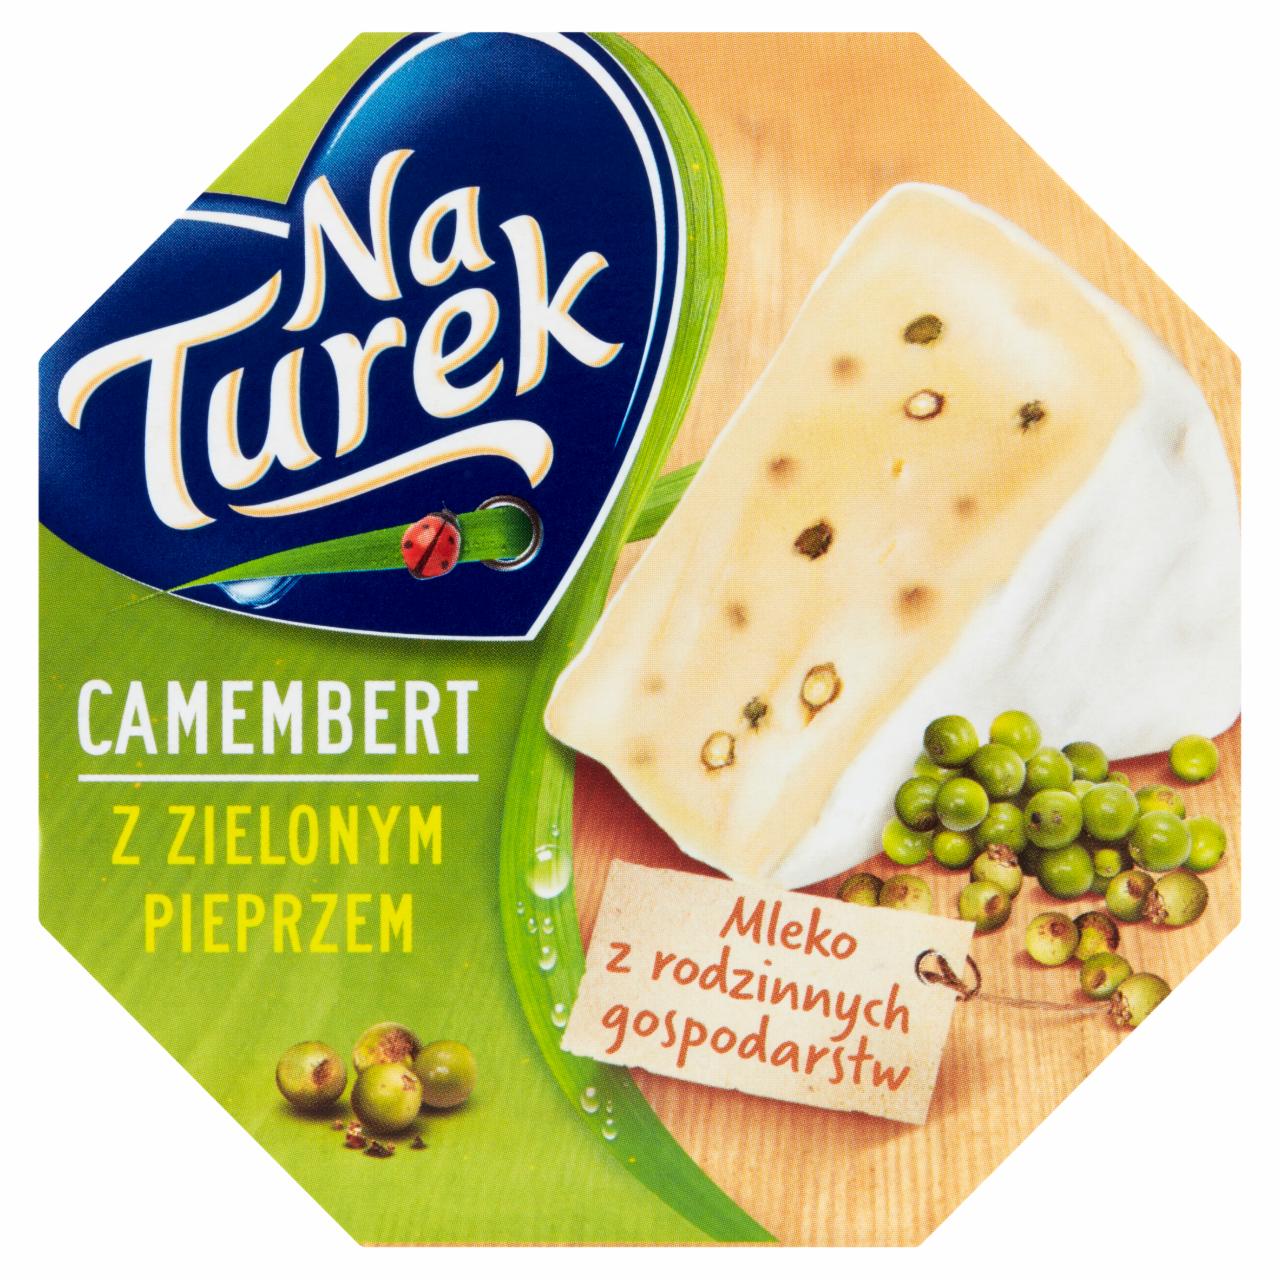 Zdjęcia - NaTurek Camembert z zielonym pieprzem 120 g